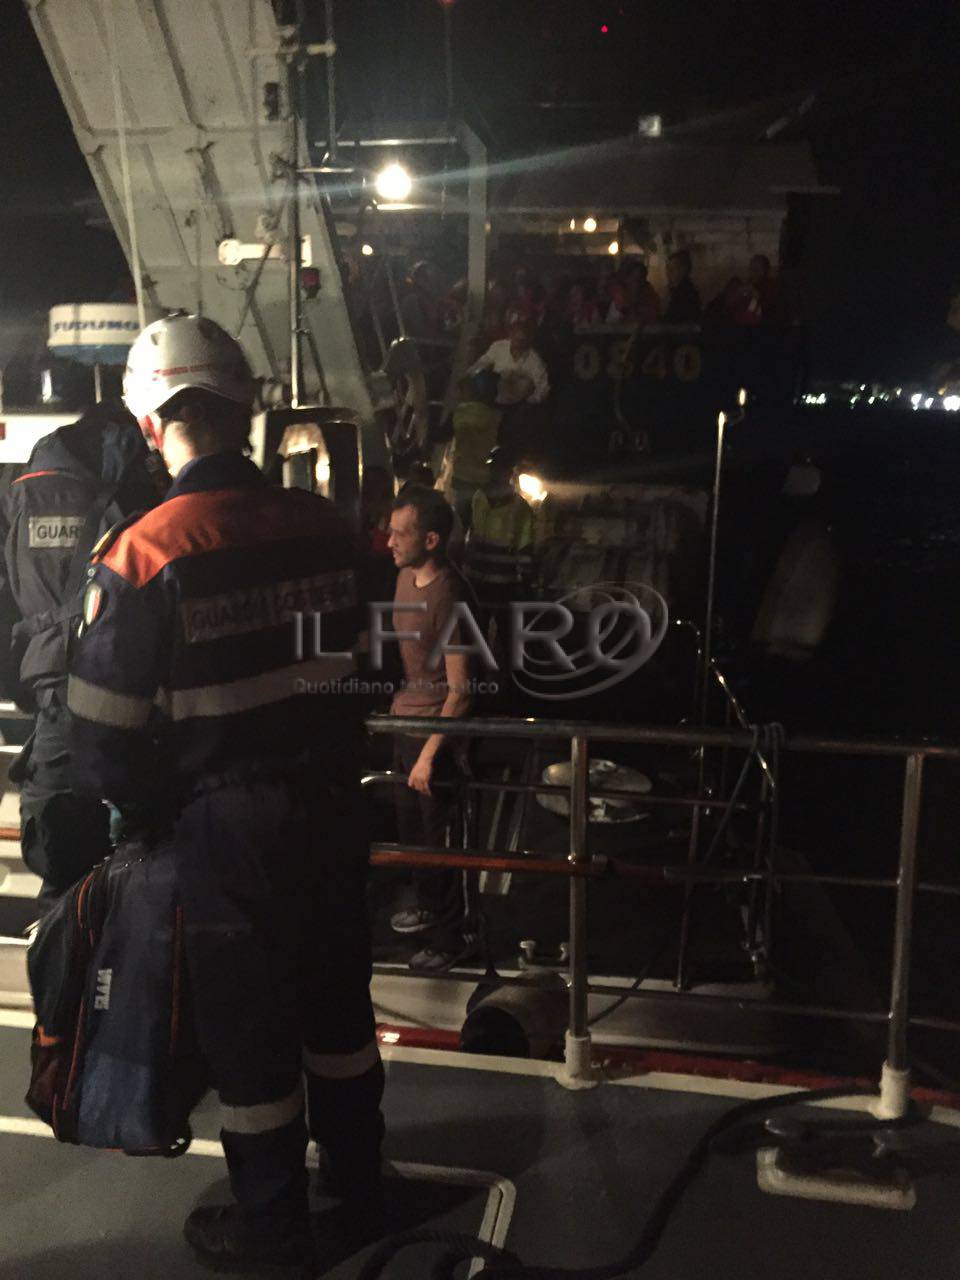 Aliscafo in panne tra #Ponza e #Terracina, tratti in salvo gli 81 passeggeri a bordo